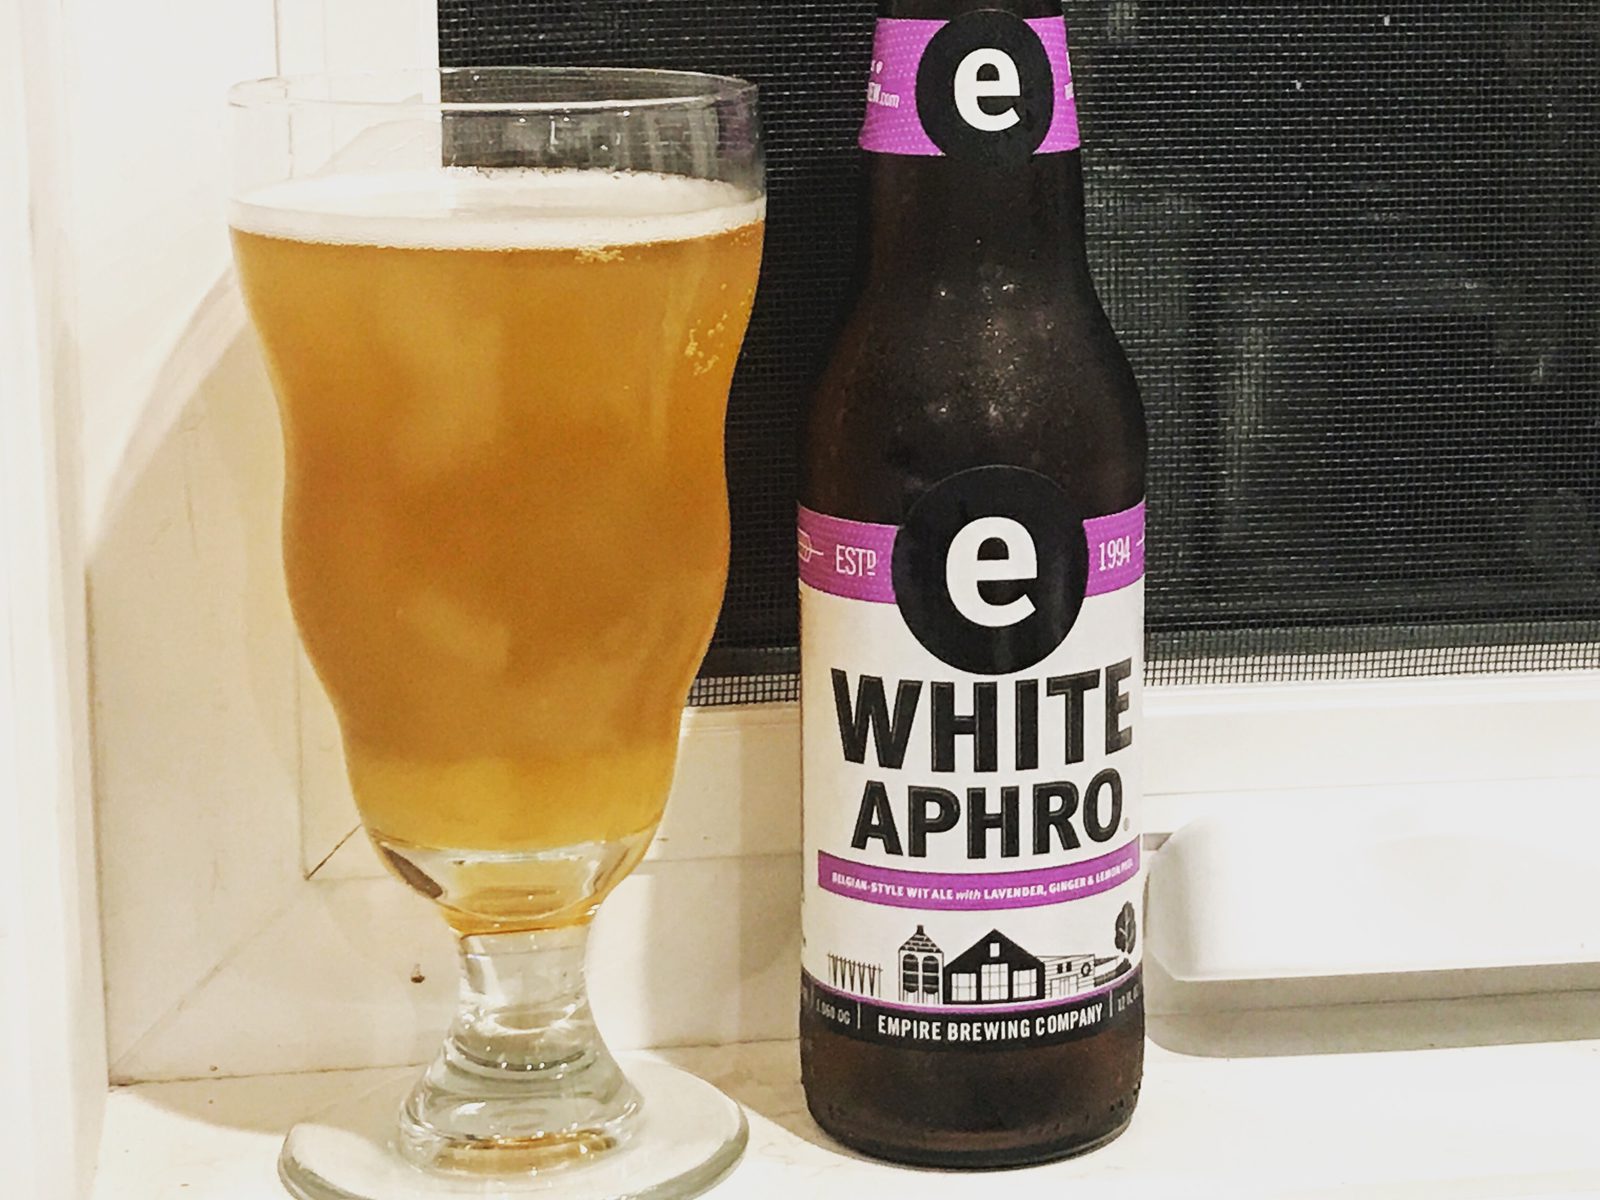 Empire Brewing Company: White Aphro